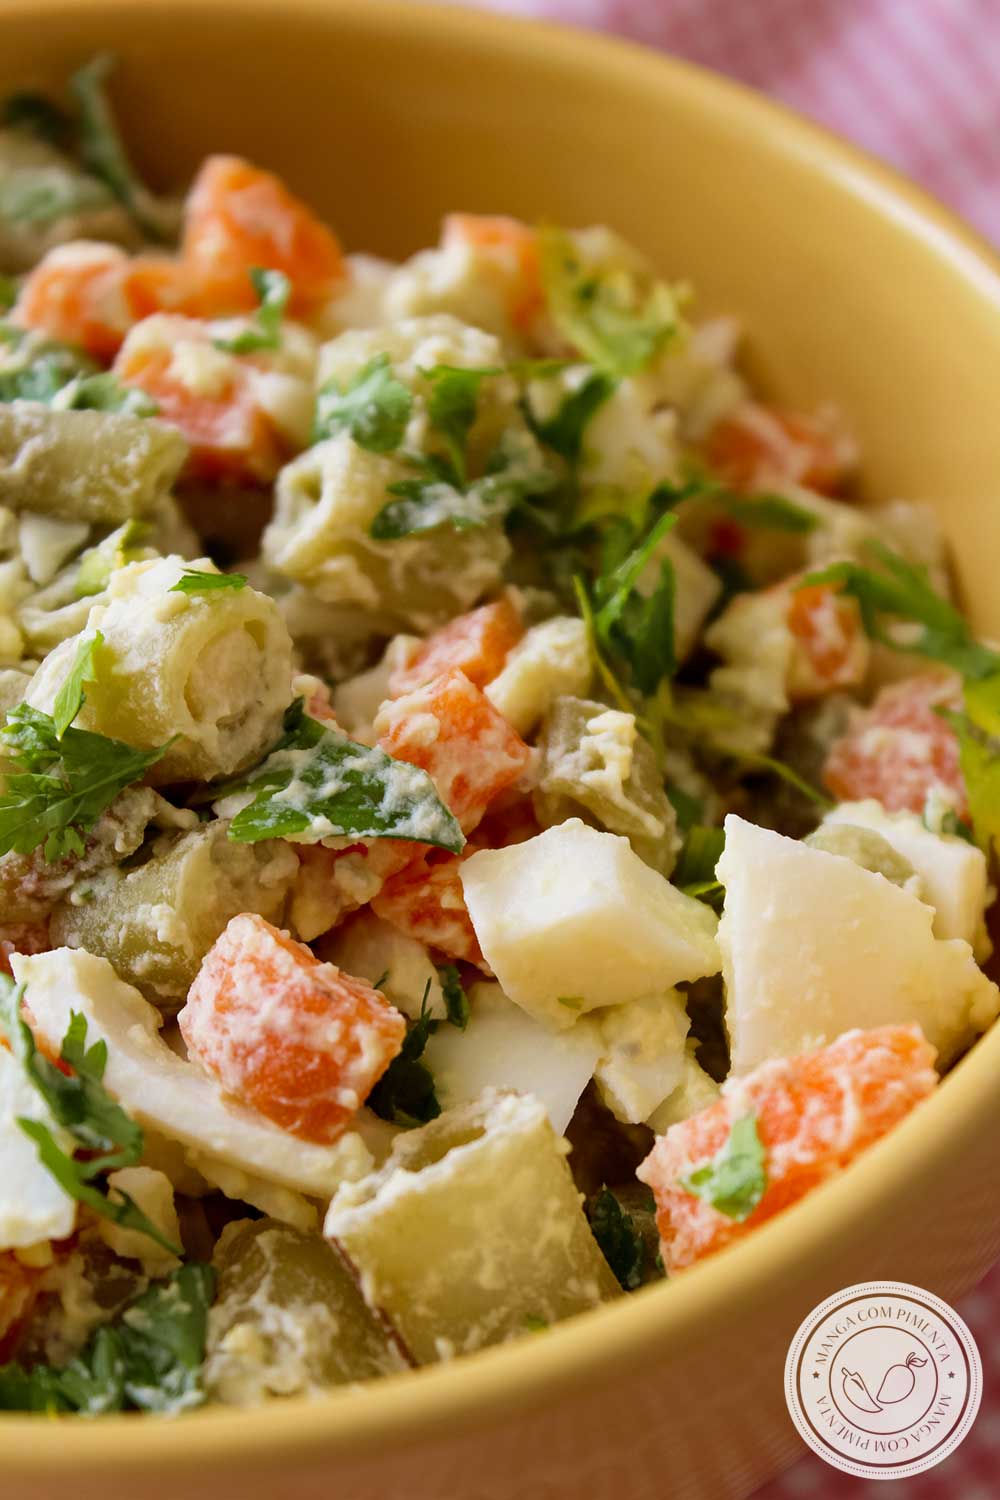 Receita de Salada de Vagem com Ovo e Cenoura - um prato delicioso para o almoço ou jantar da família!